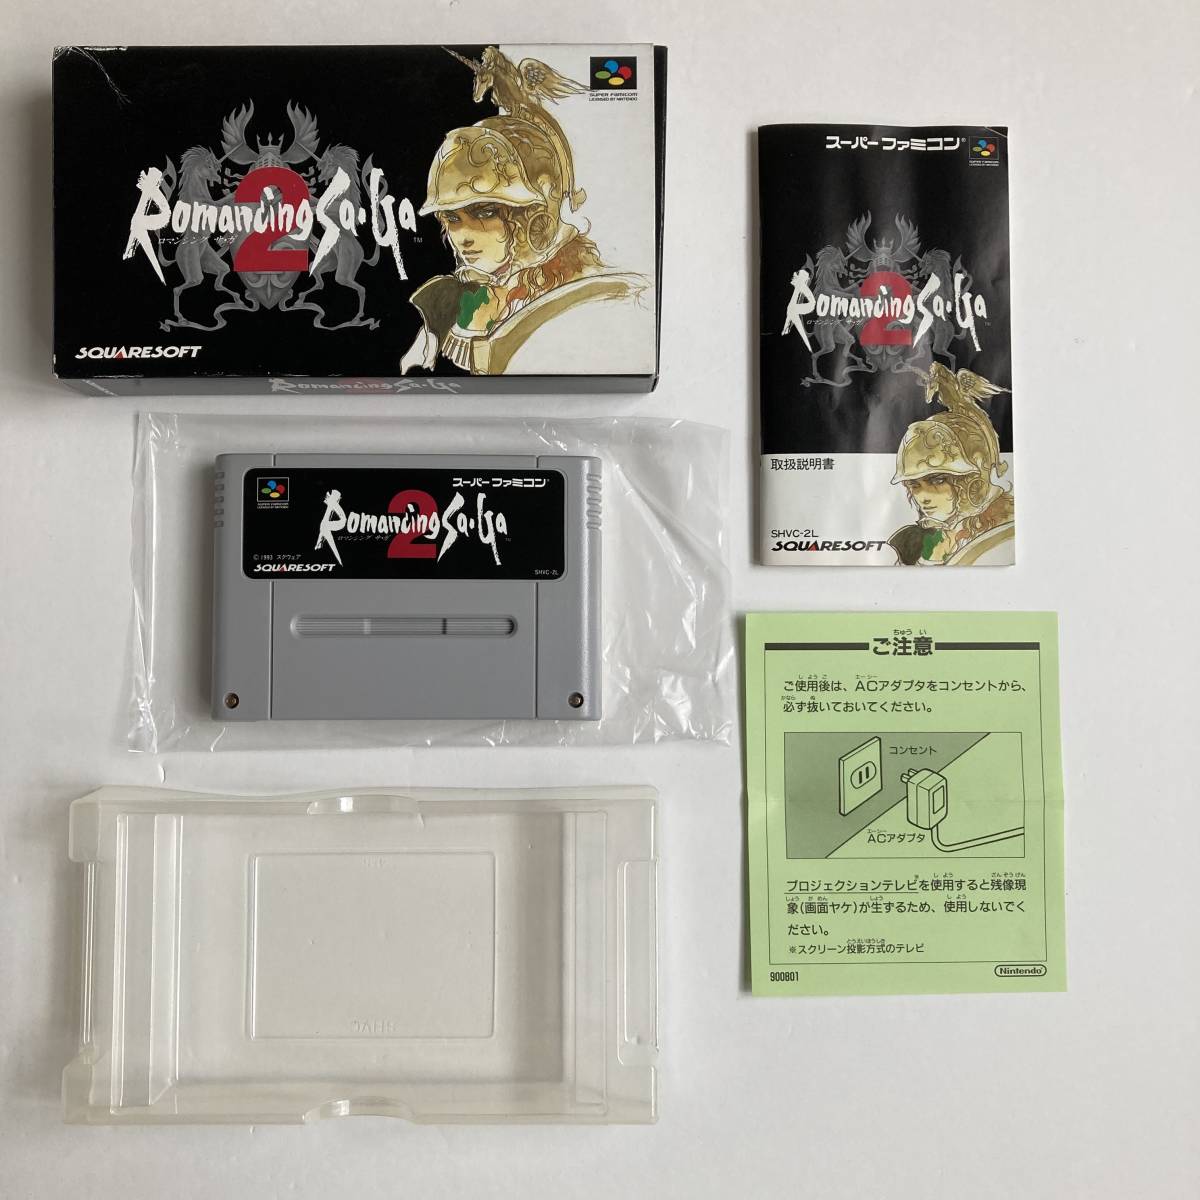 スーパーファミコン ロマンシング サガ 1 2 3 セット/ Lot 3 Romancing Saga 1 2 3 I II III SNES SFC Nintendo Famicom Square Enix Japan